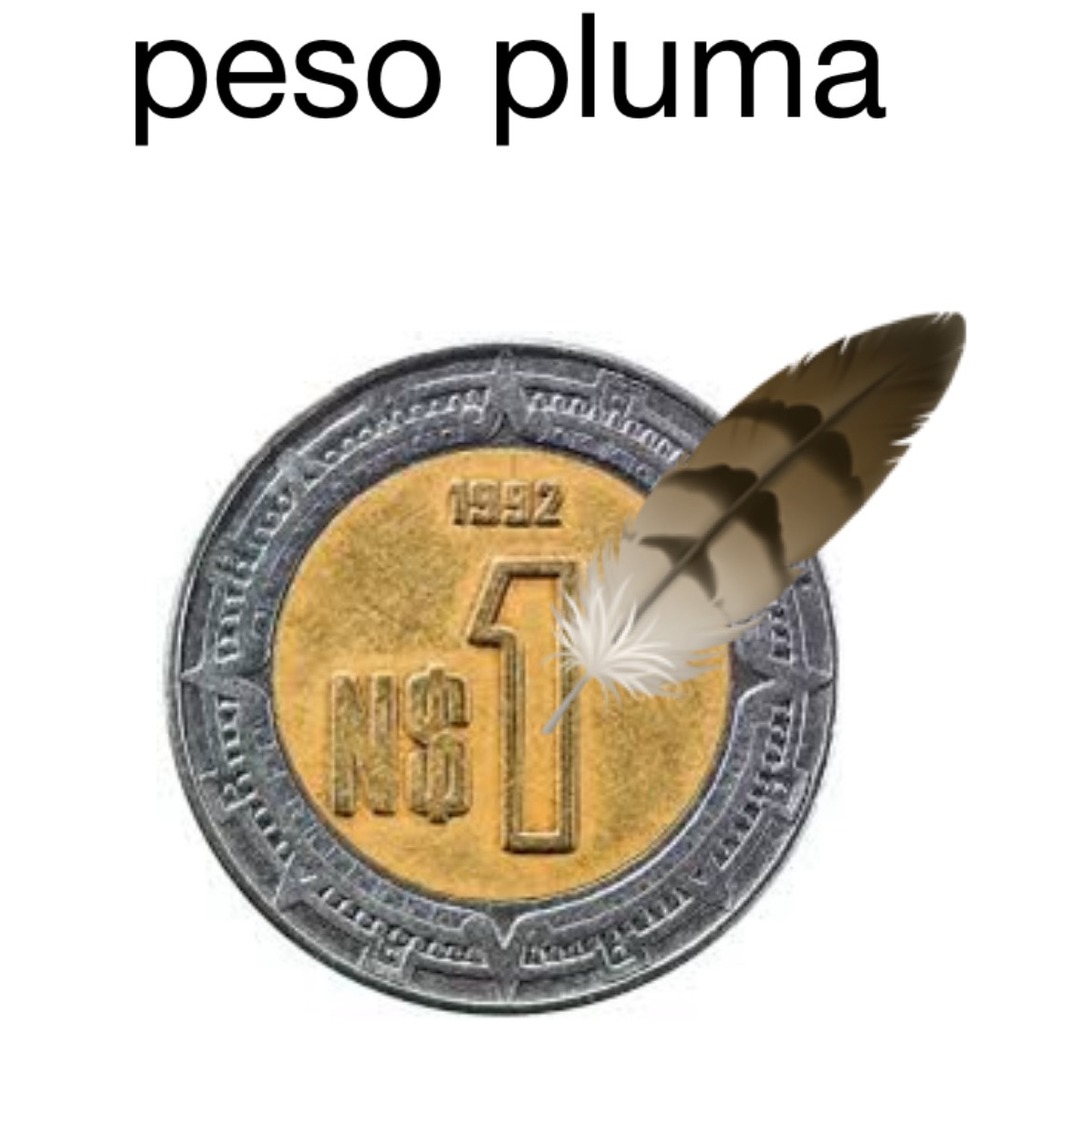 peso pluma - meme